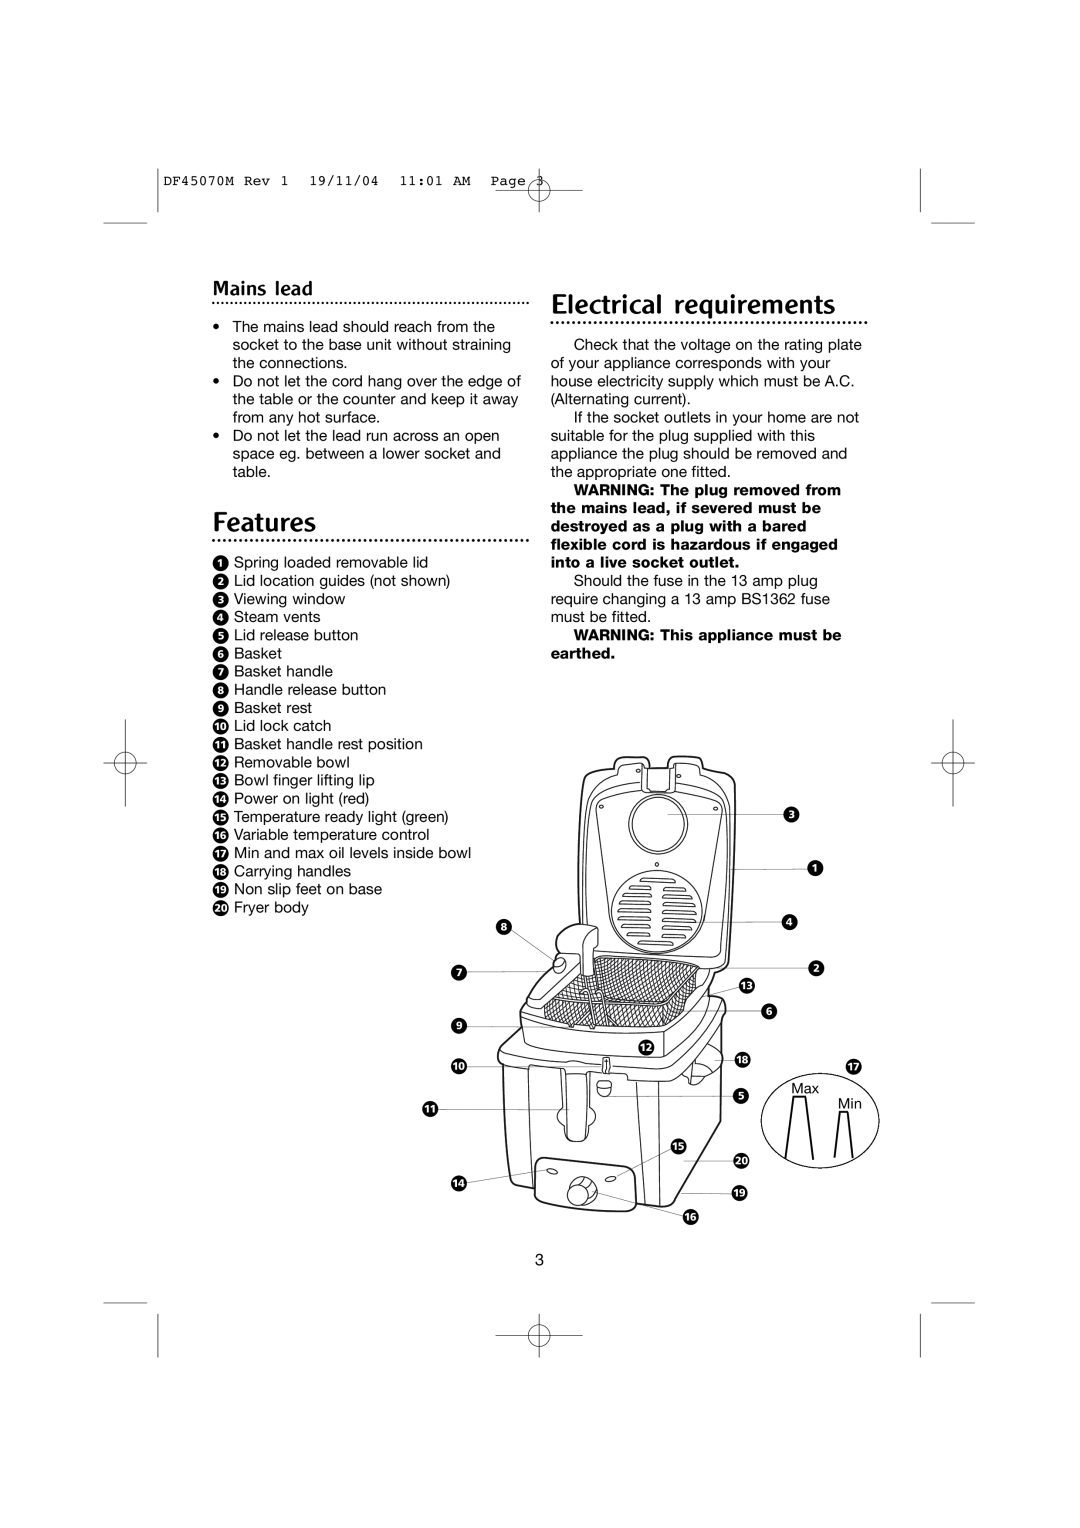 Morphy Richards DF45070M manual Features, Electrical requirements, Mains lead, · ‡ ‚ „ ‰ Á, Â Ë È, ‹ ⁄ › ¤ Ê ﬂ ÎÍ 